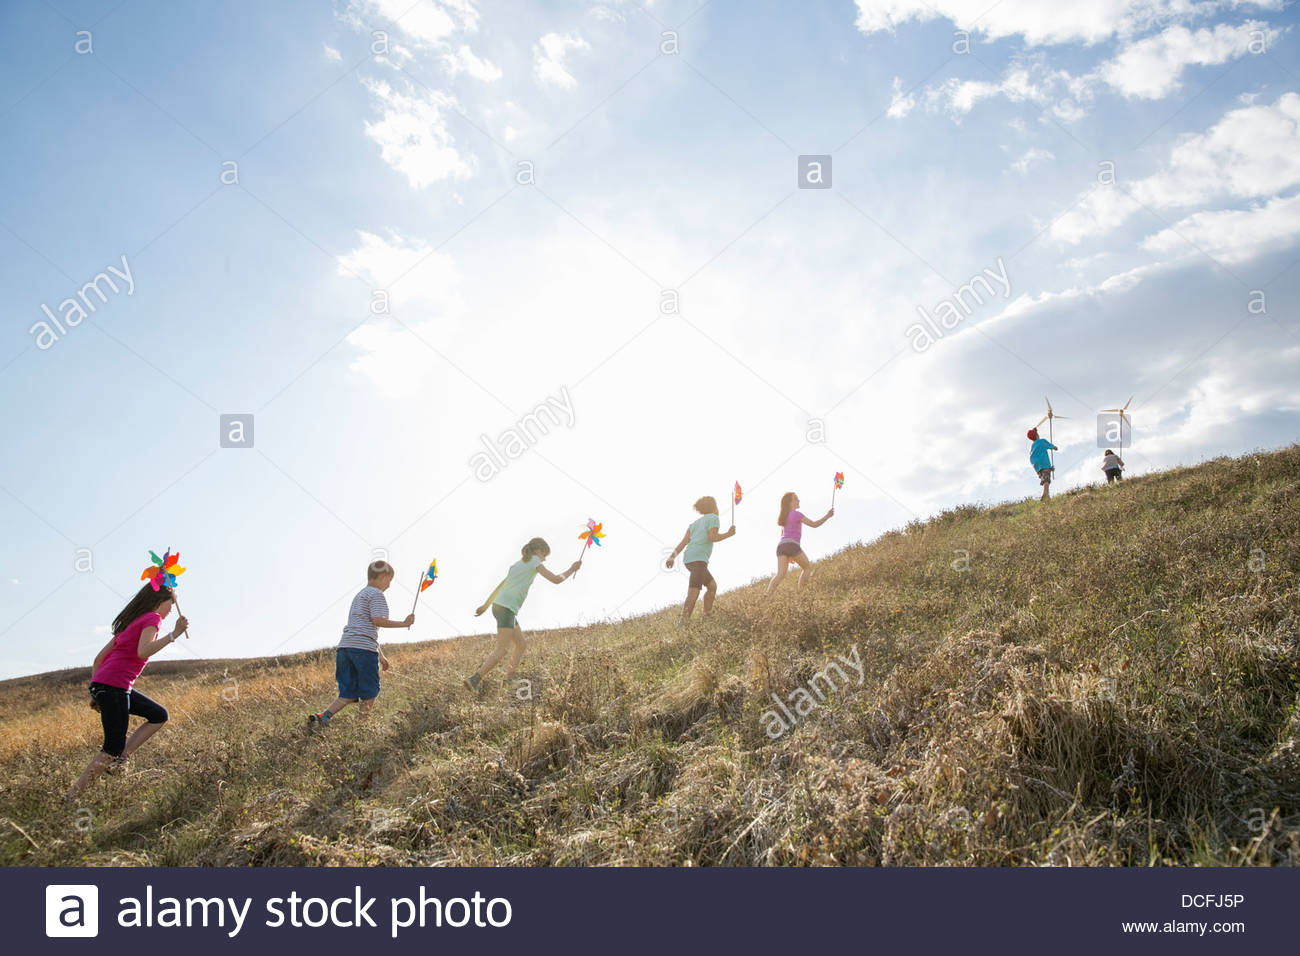 Los niños caminando cuesta arriba con molinetes y modelos de aerogeneradores Foto de stock